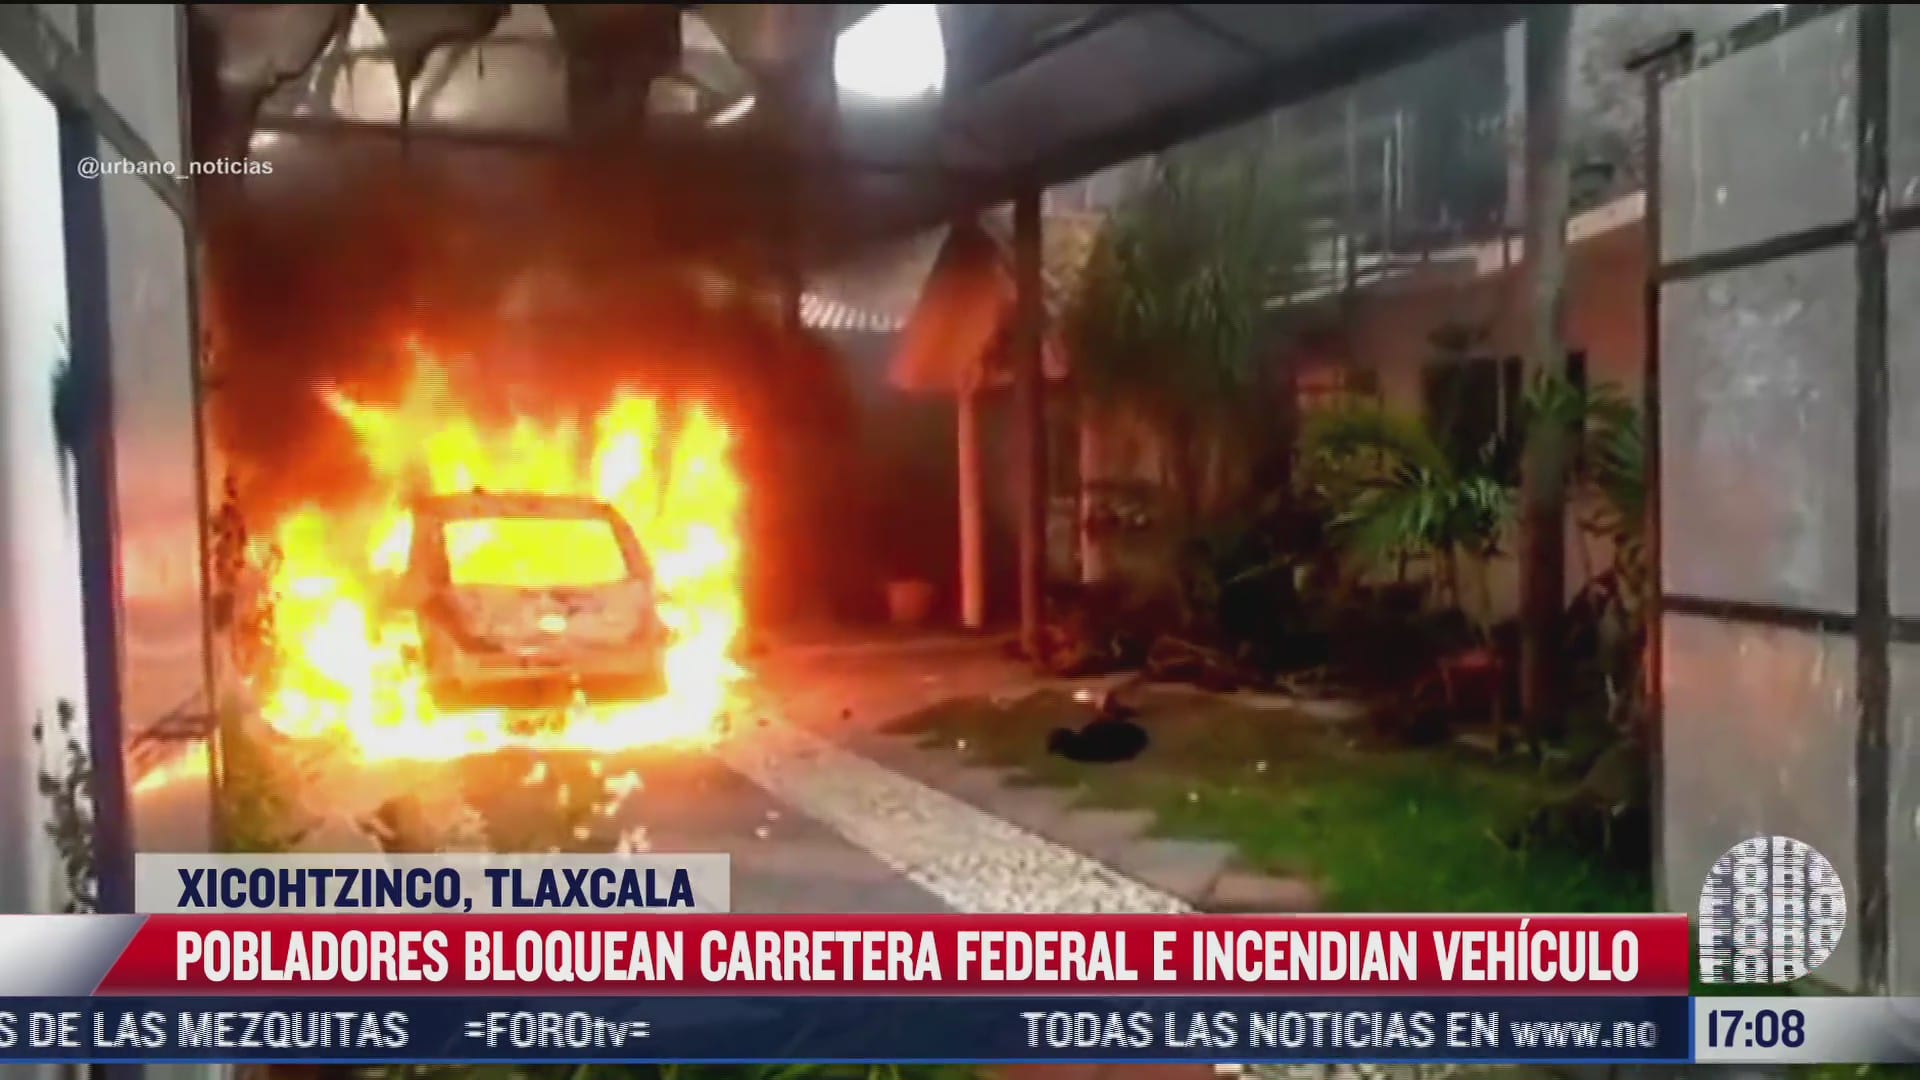 pobladores de xicohtzingo tlaxcala incendian vehiculo y bloquean carretera